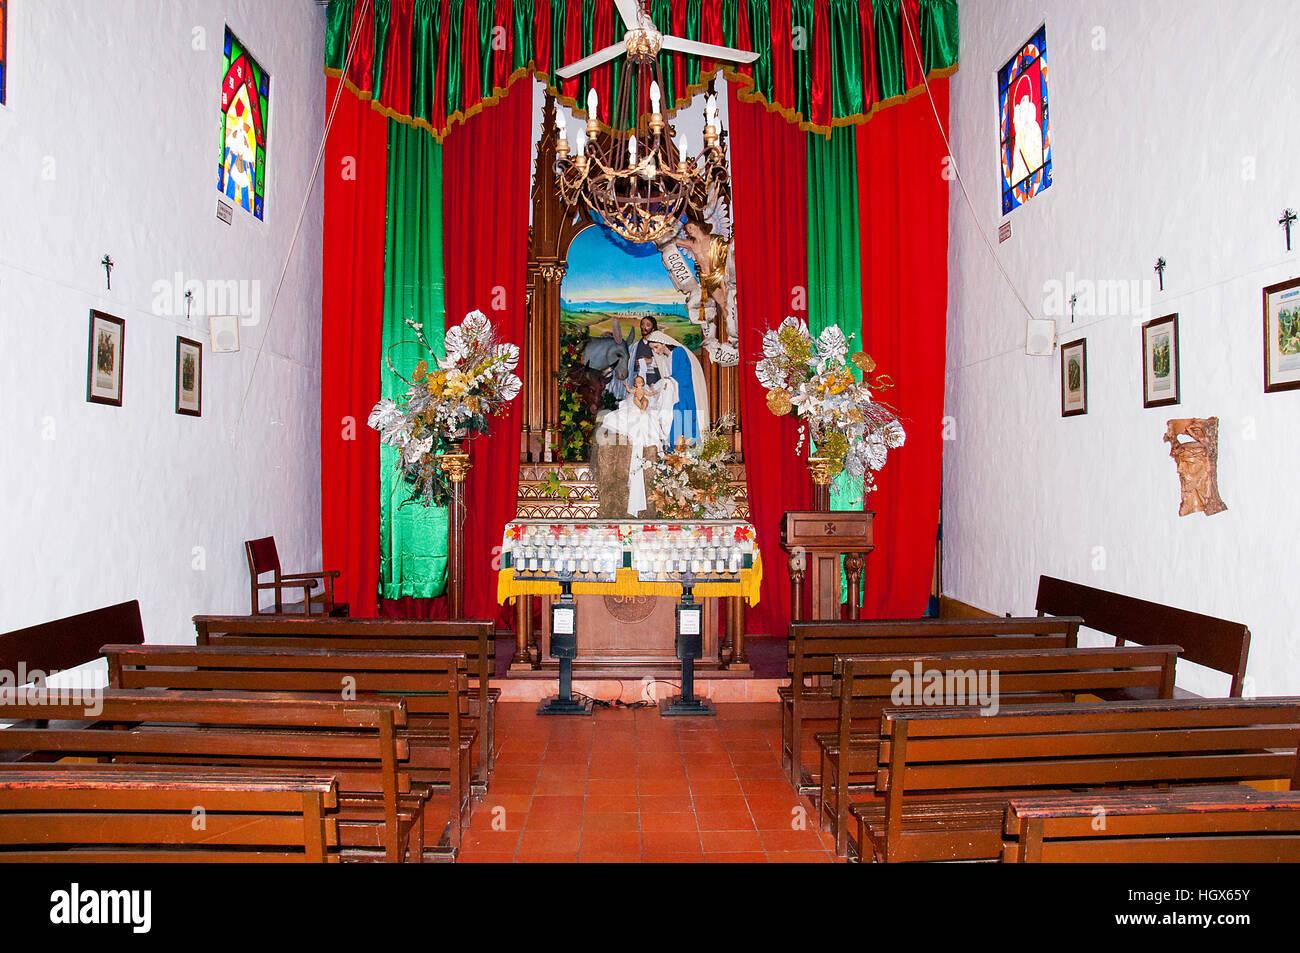 Le immagini degli interni dalla chiesa della collina Nutibara a Medellin, Colombia Foto Stock